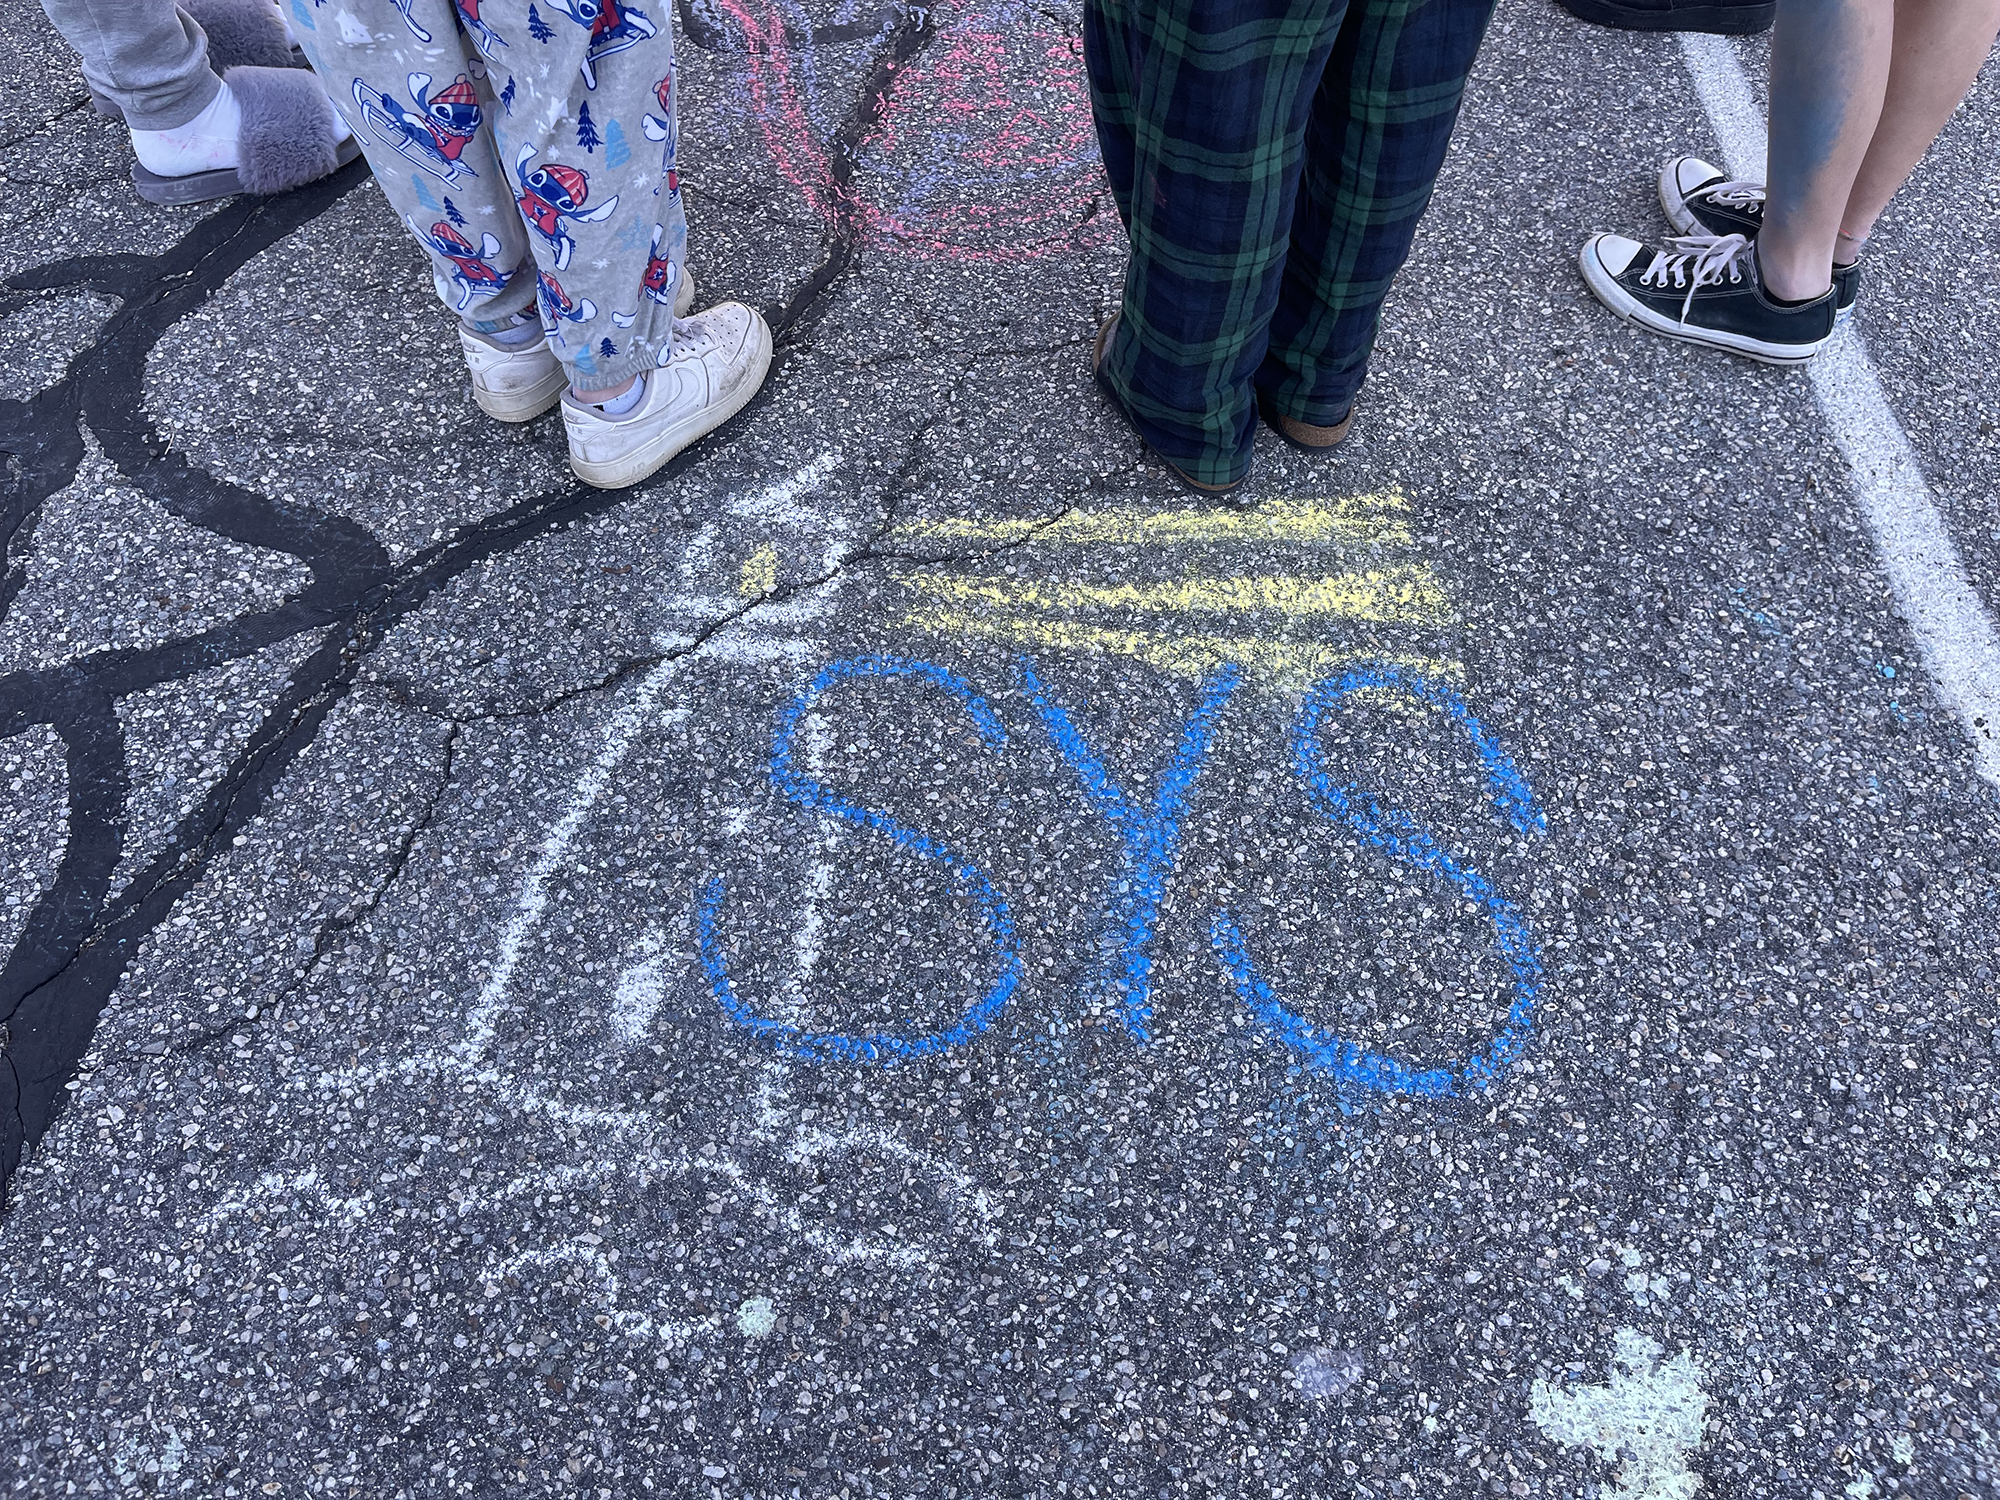 SYS written in chalk on sidewalk